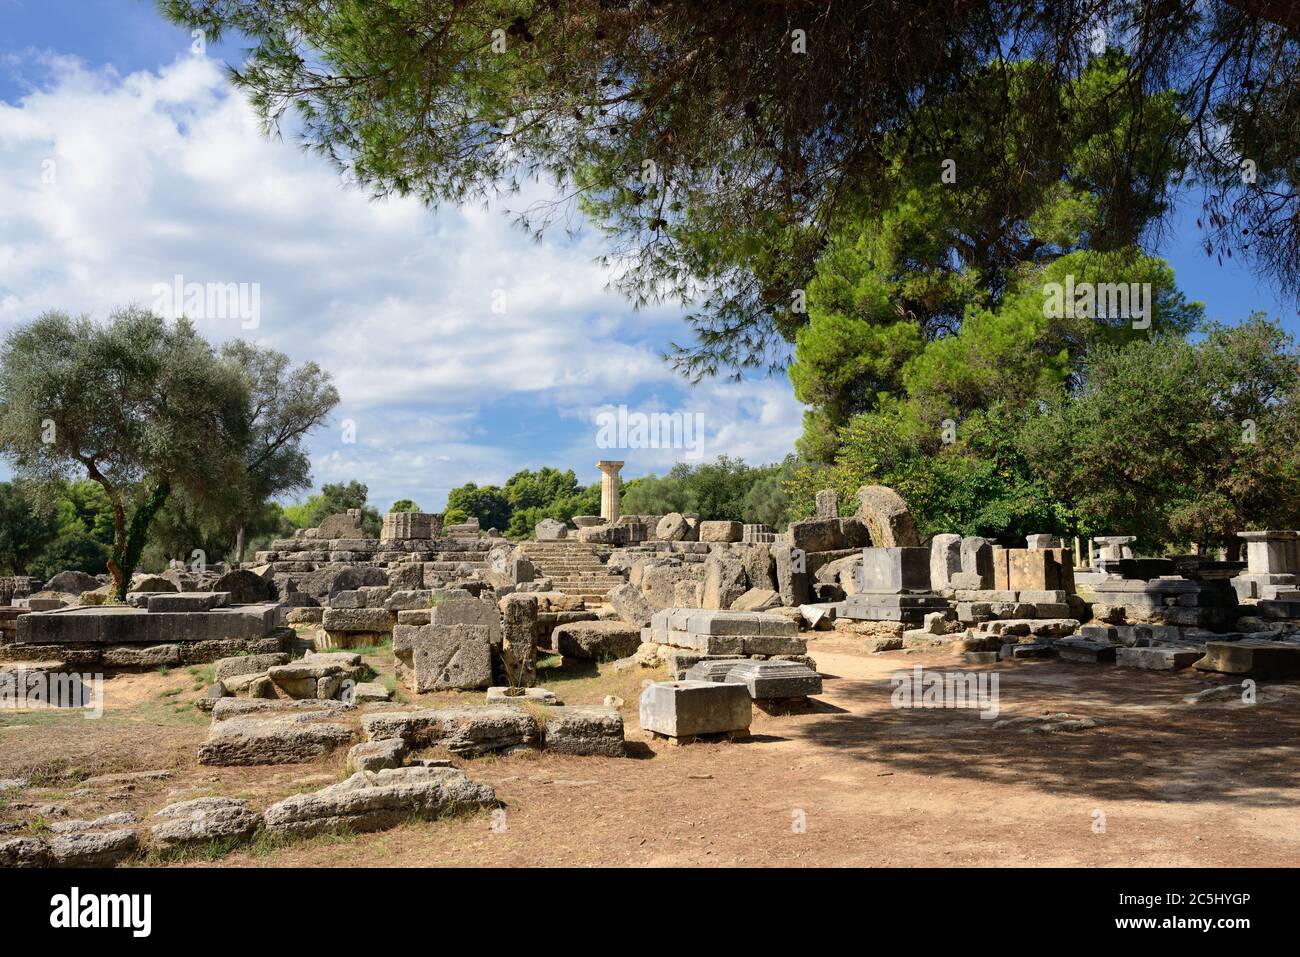 Grèce Olympie, ruines anciennes du temple de Zeus, c'est le bâtiment le plus important dans l'Altis à Olympie, berceau des jeux olympiques - UNESCO W Banque D'Images